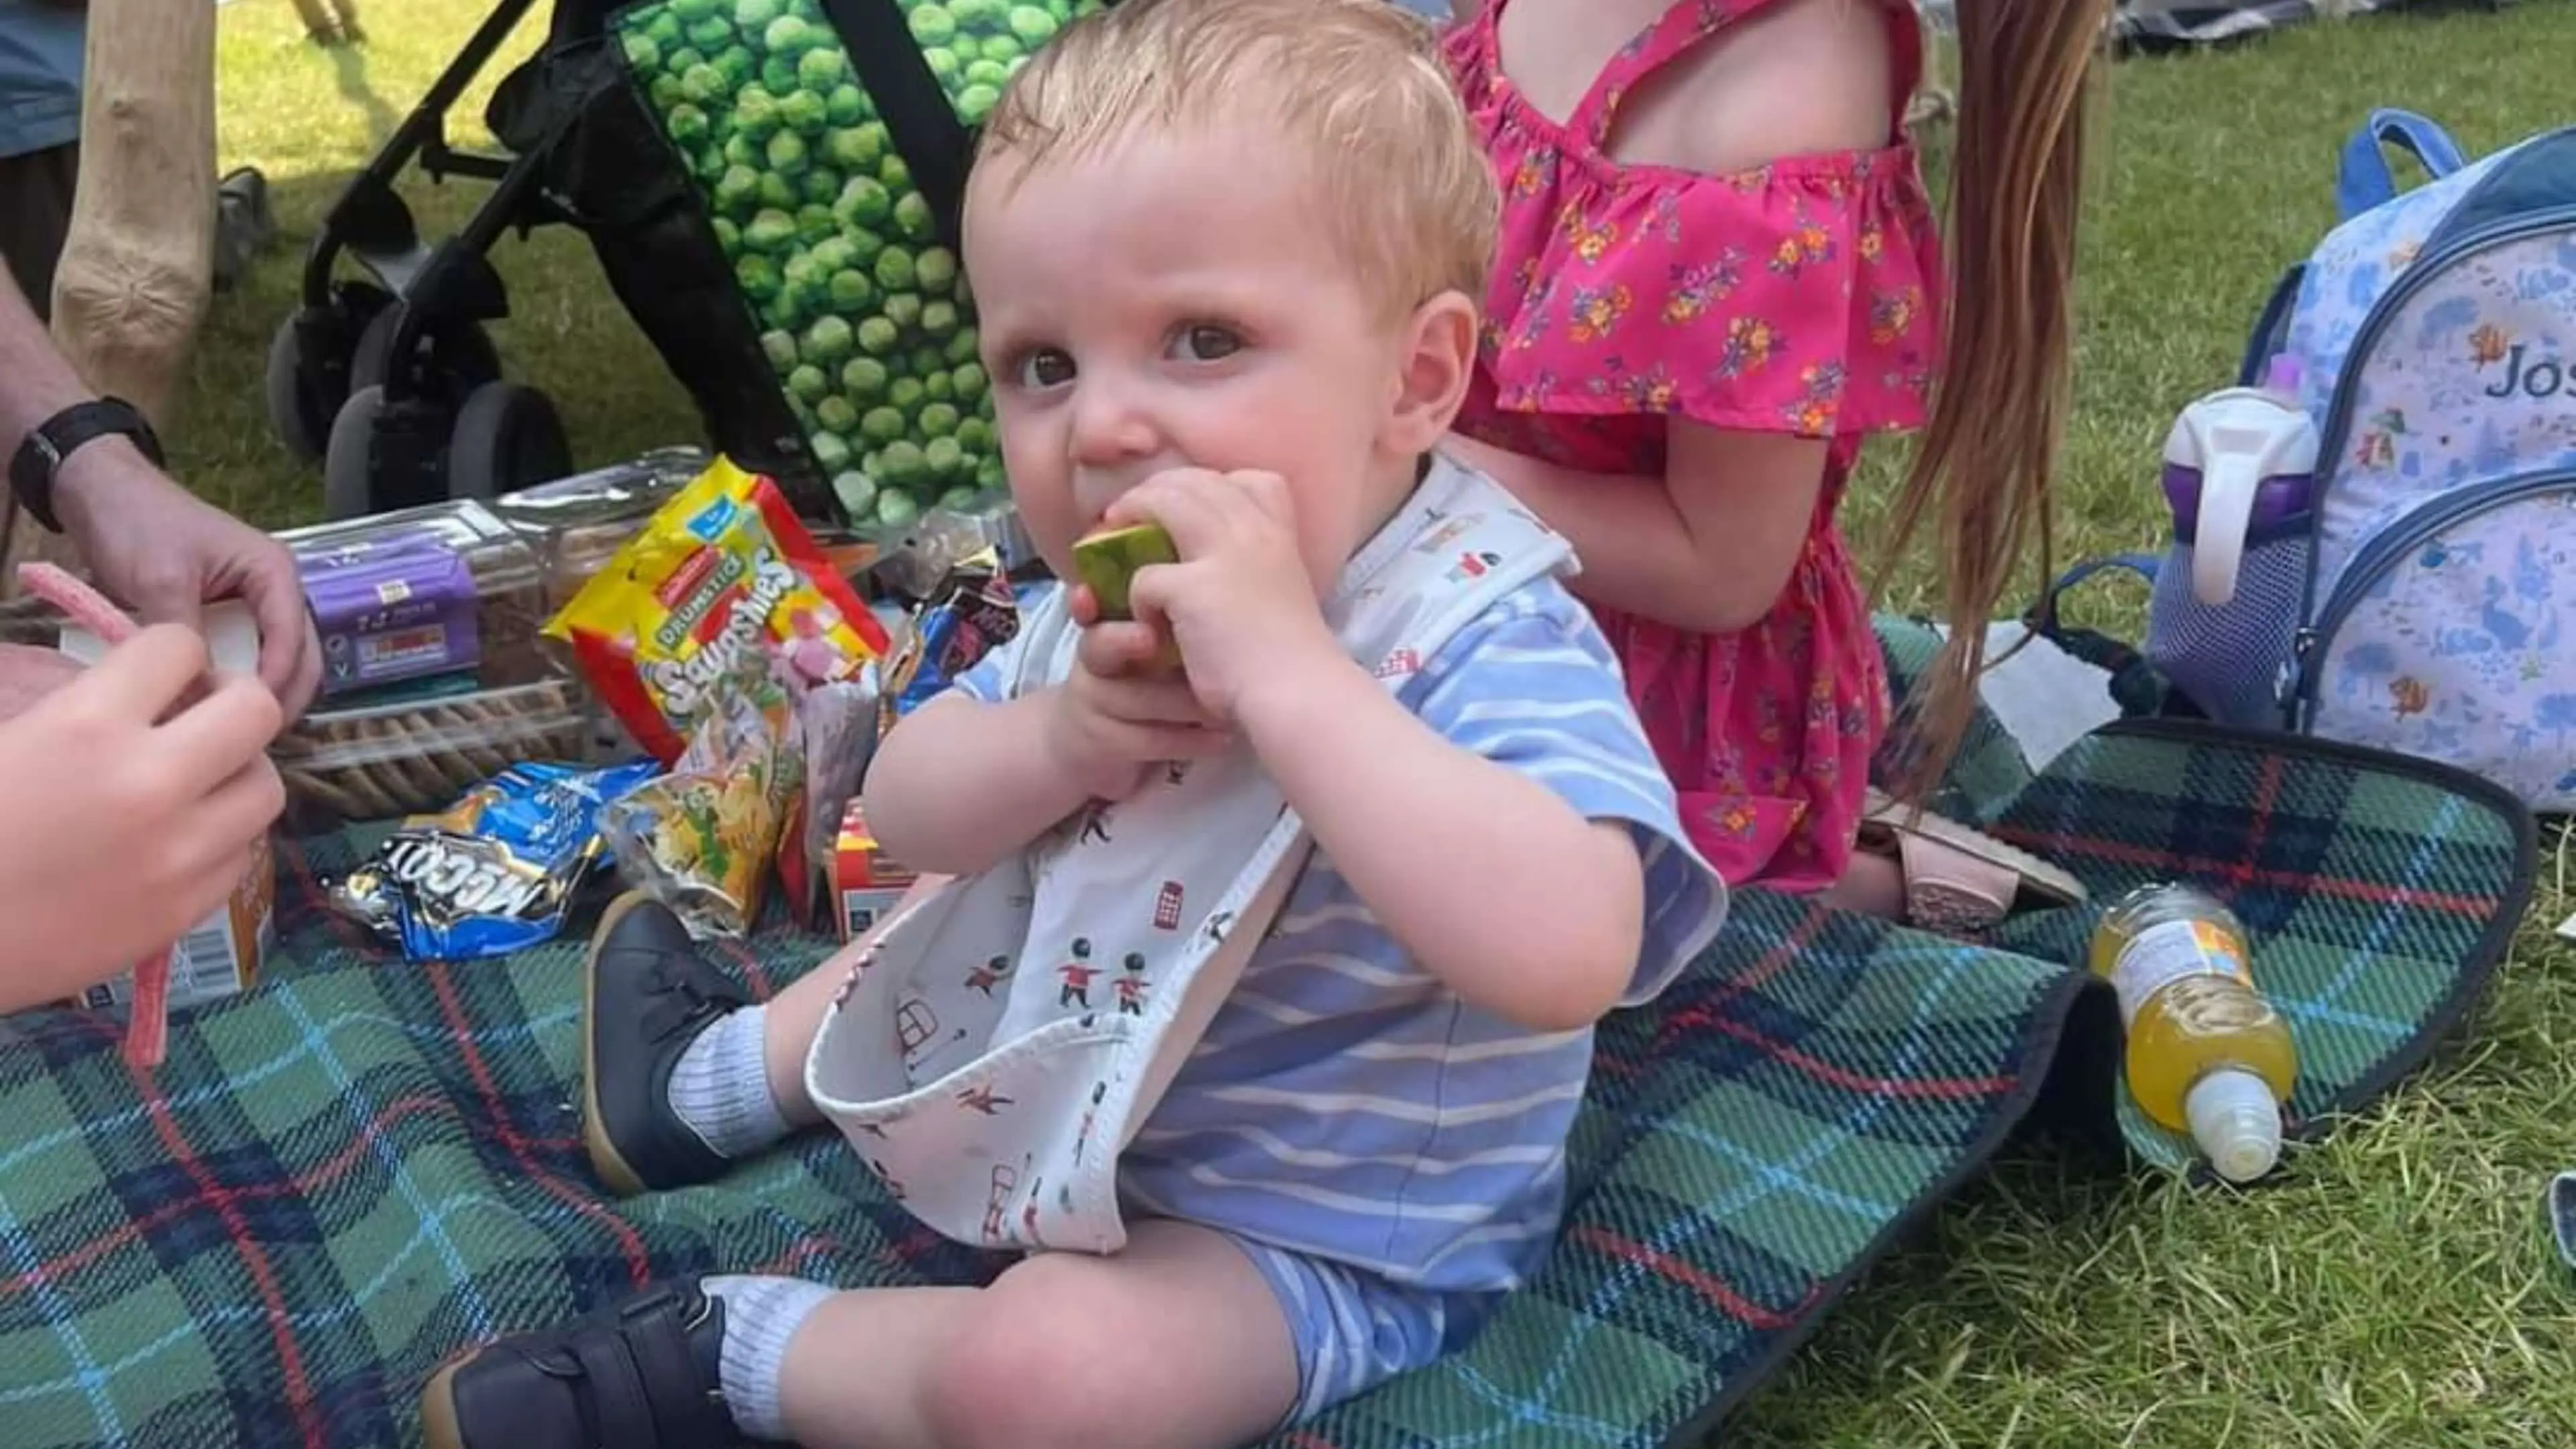 Young boy eating food at a picnic